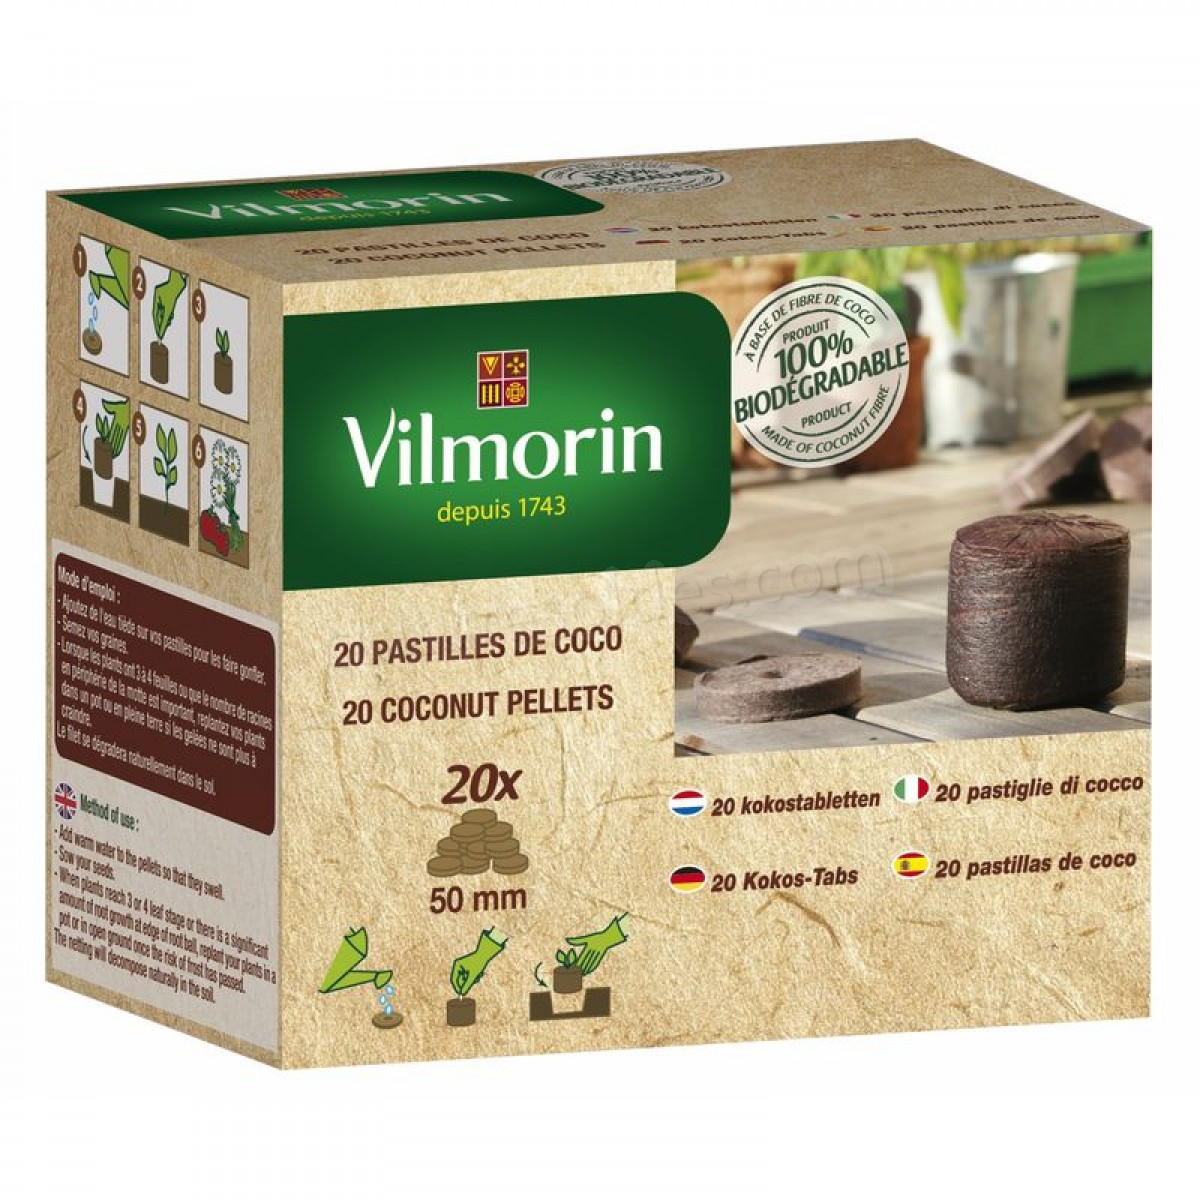 Vilmorin - Kit de 20 Pastilles Tout-en-Un 50 mm soldes en ligne - Vilmorin - Kit de 20 Pastilles Tout-en-Un 50 mm soldes en ligne